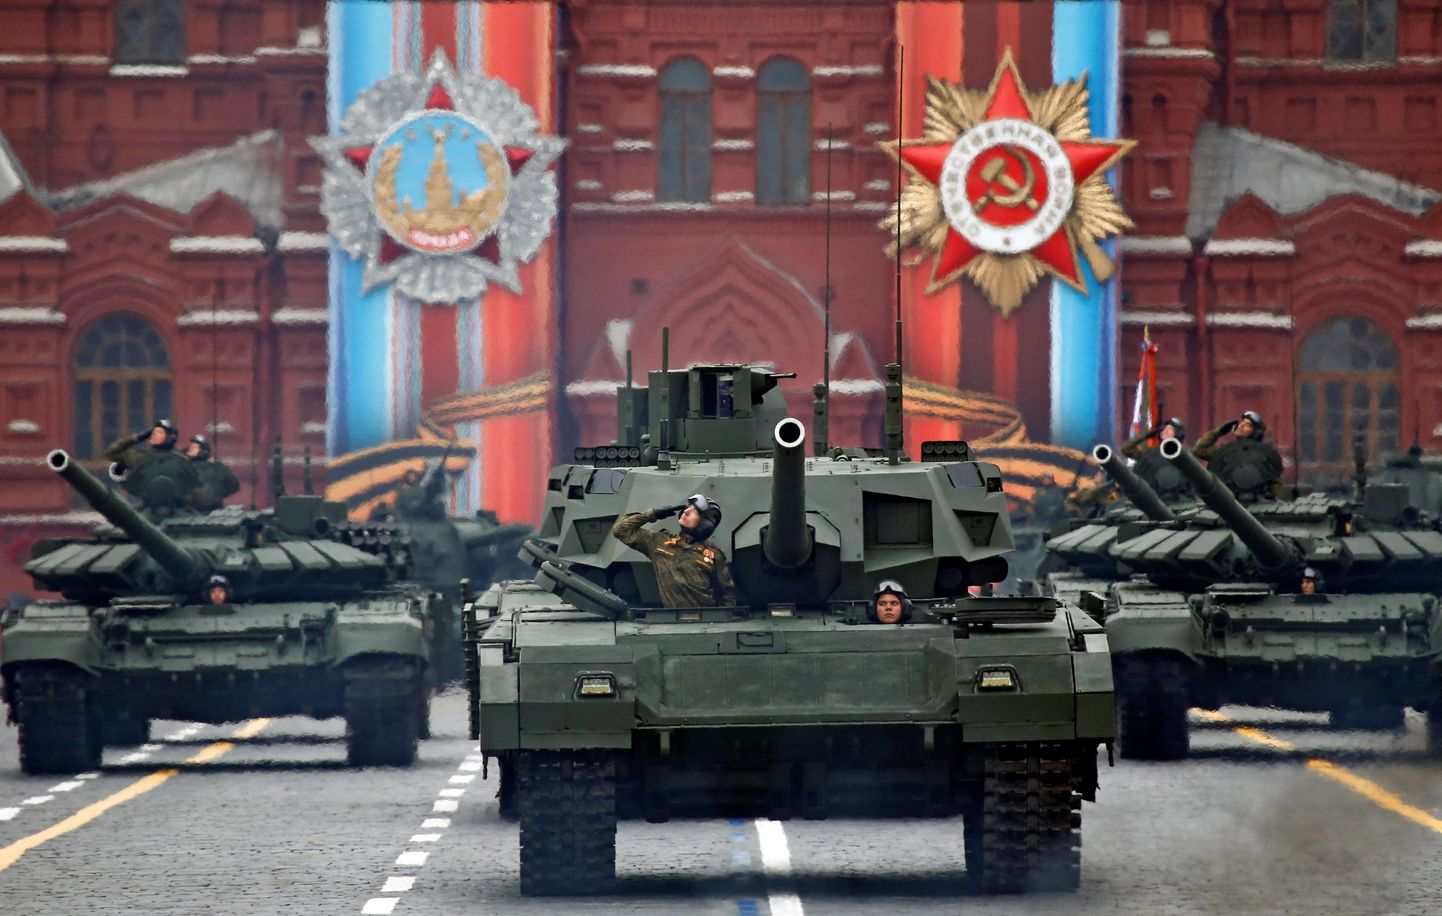 Vene sõjaväelased ja tankid.